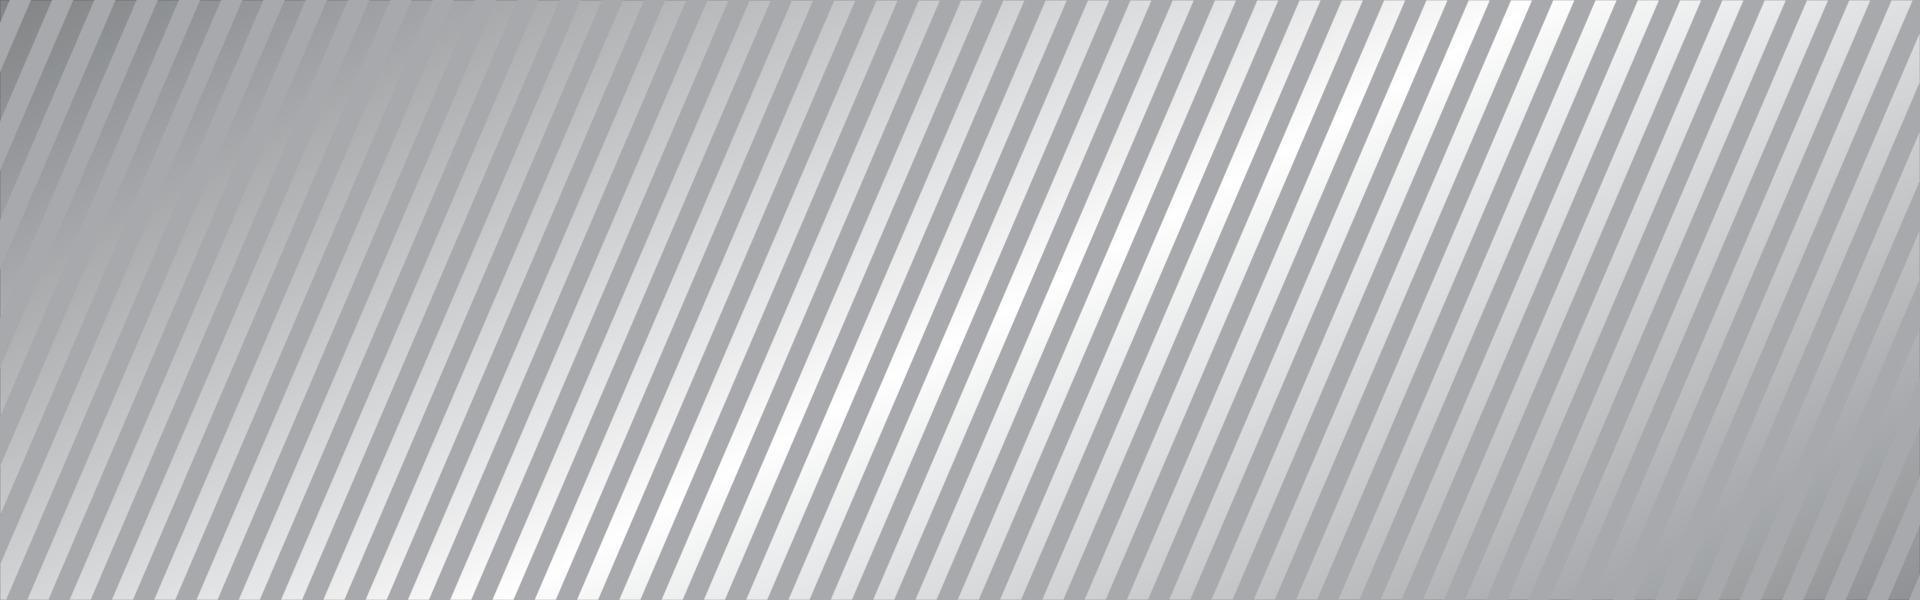 fond long de la ligne diagonale. texture à rayures blanches. élément de design droit gris. bannière neutre abstraite. décoration en tissu. concept de lignes dynamiques. modèle de couverture. illustration vectorielle vecteur